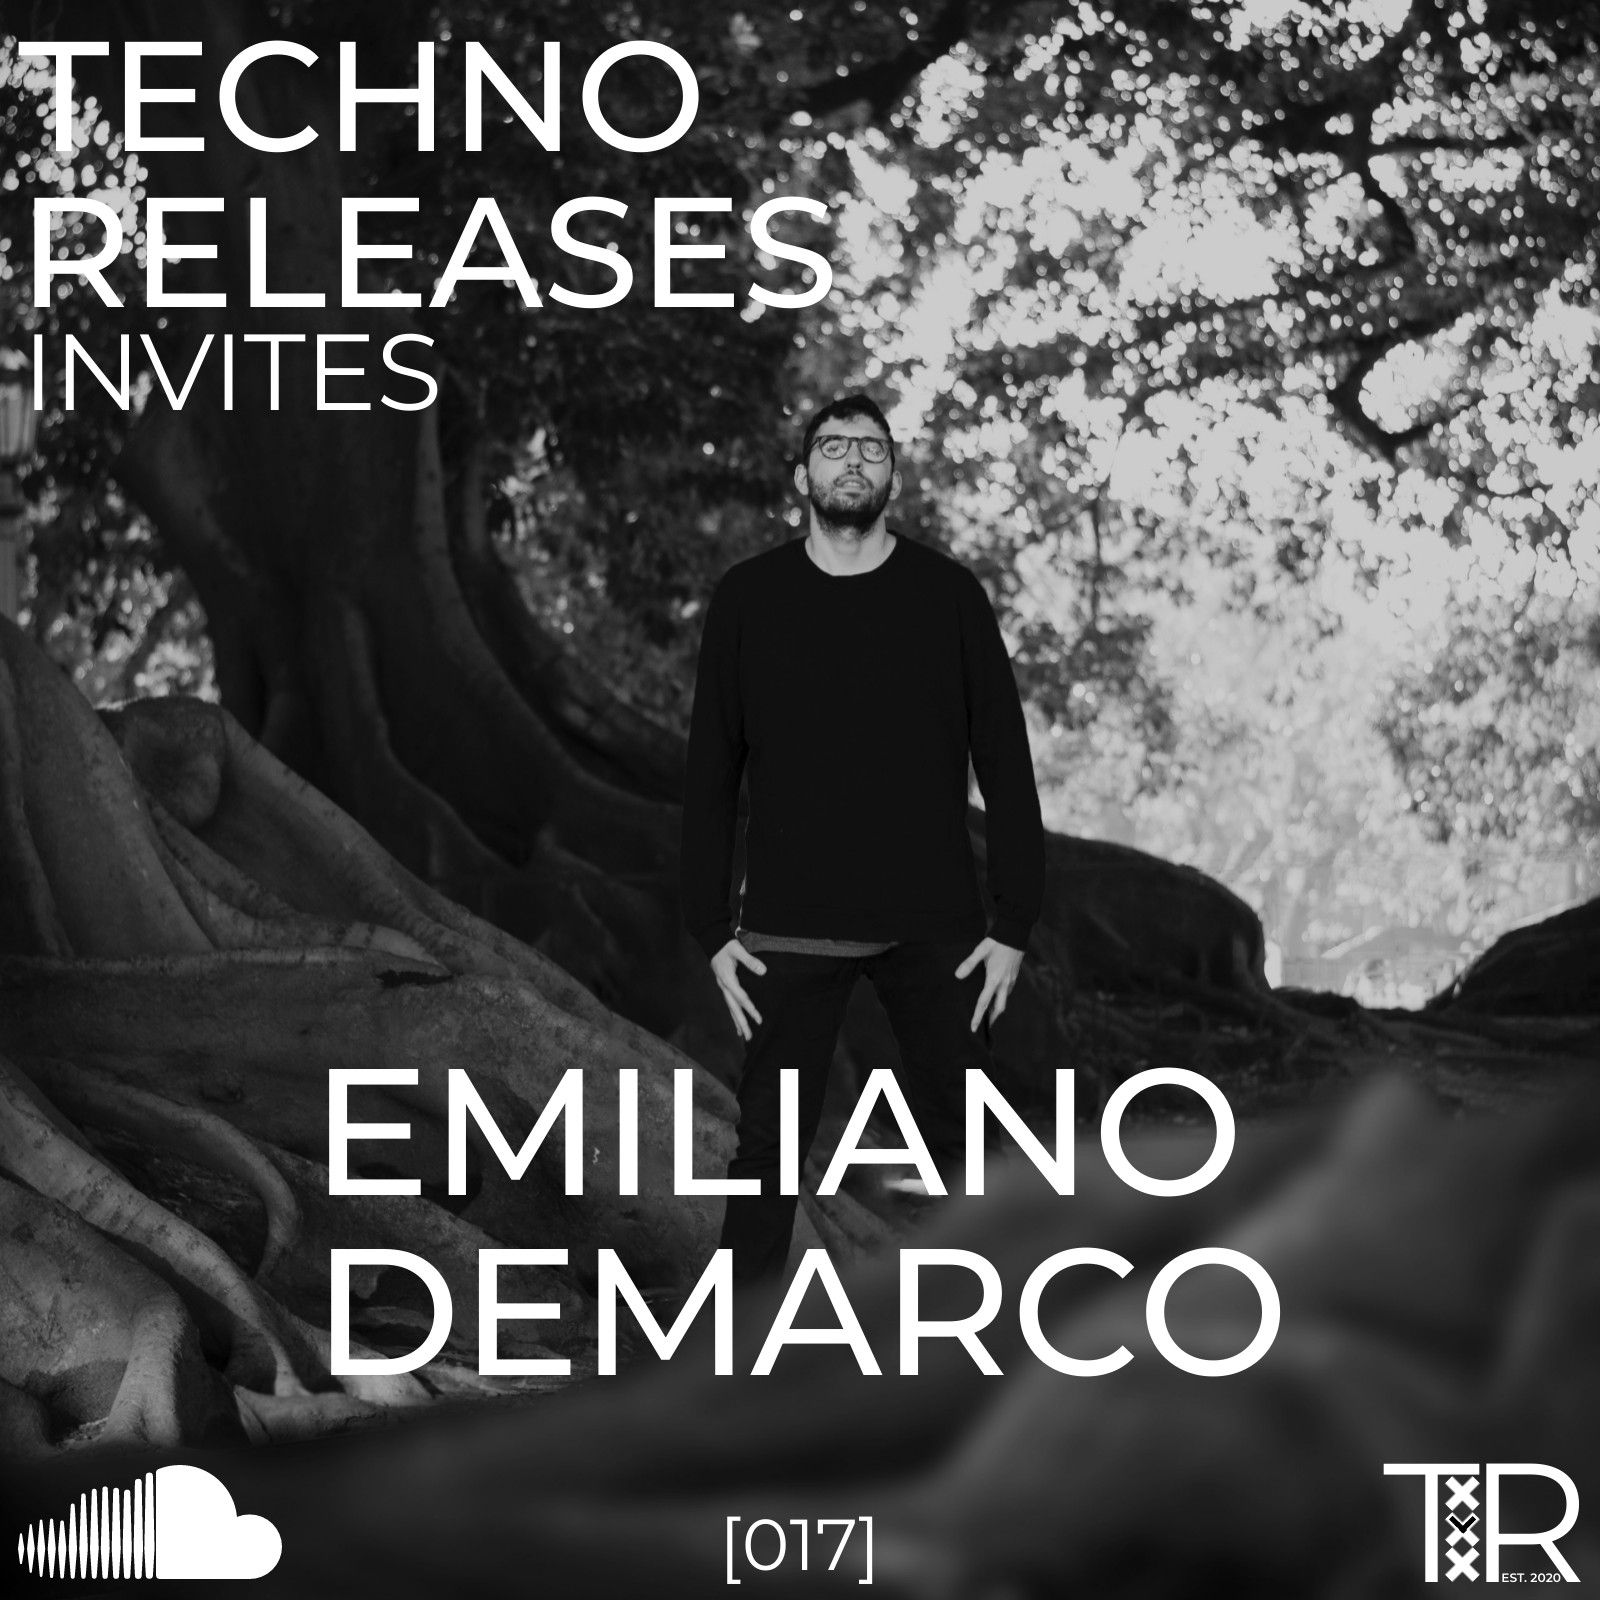 Download Techno Releases Invites Emiliano Demarco - [017]